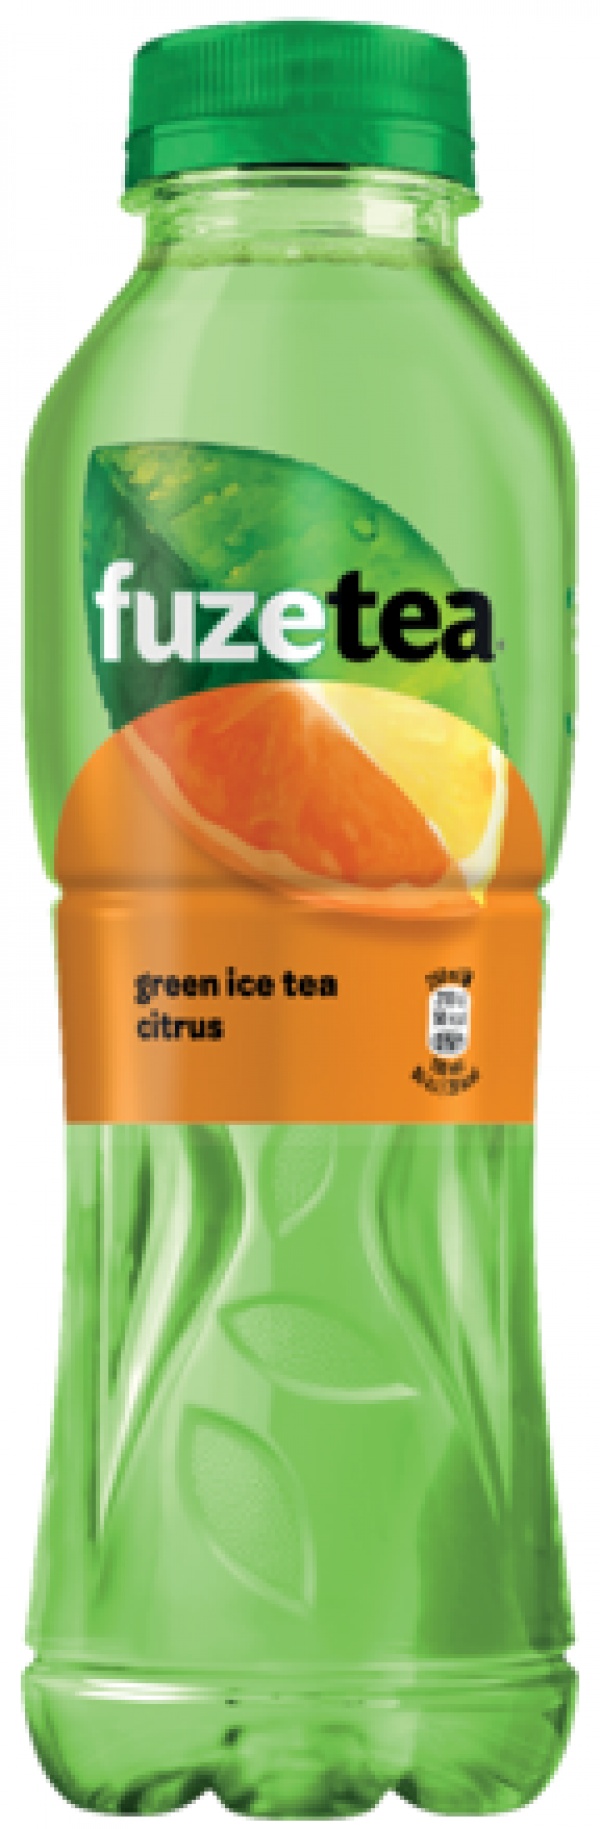 Fuze green ice tea citrus, 500ml